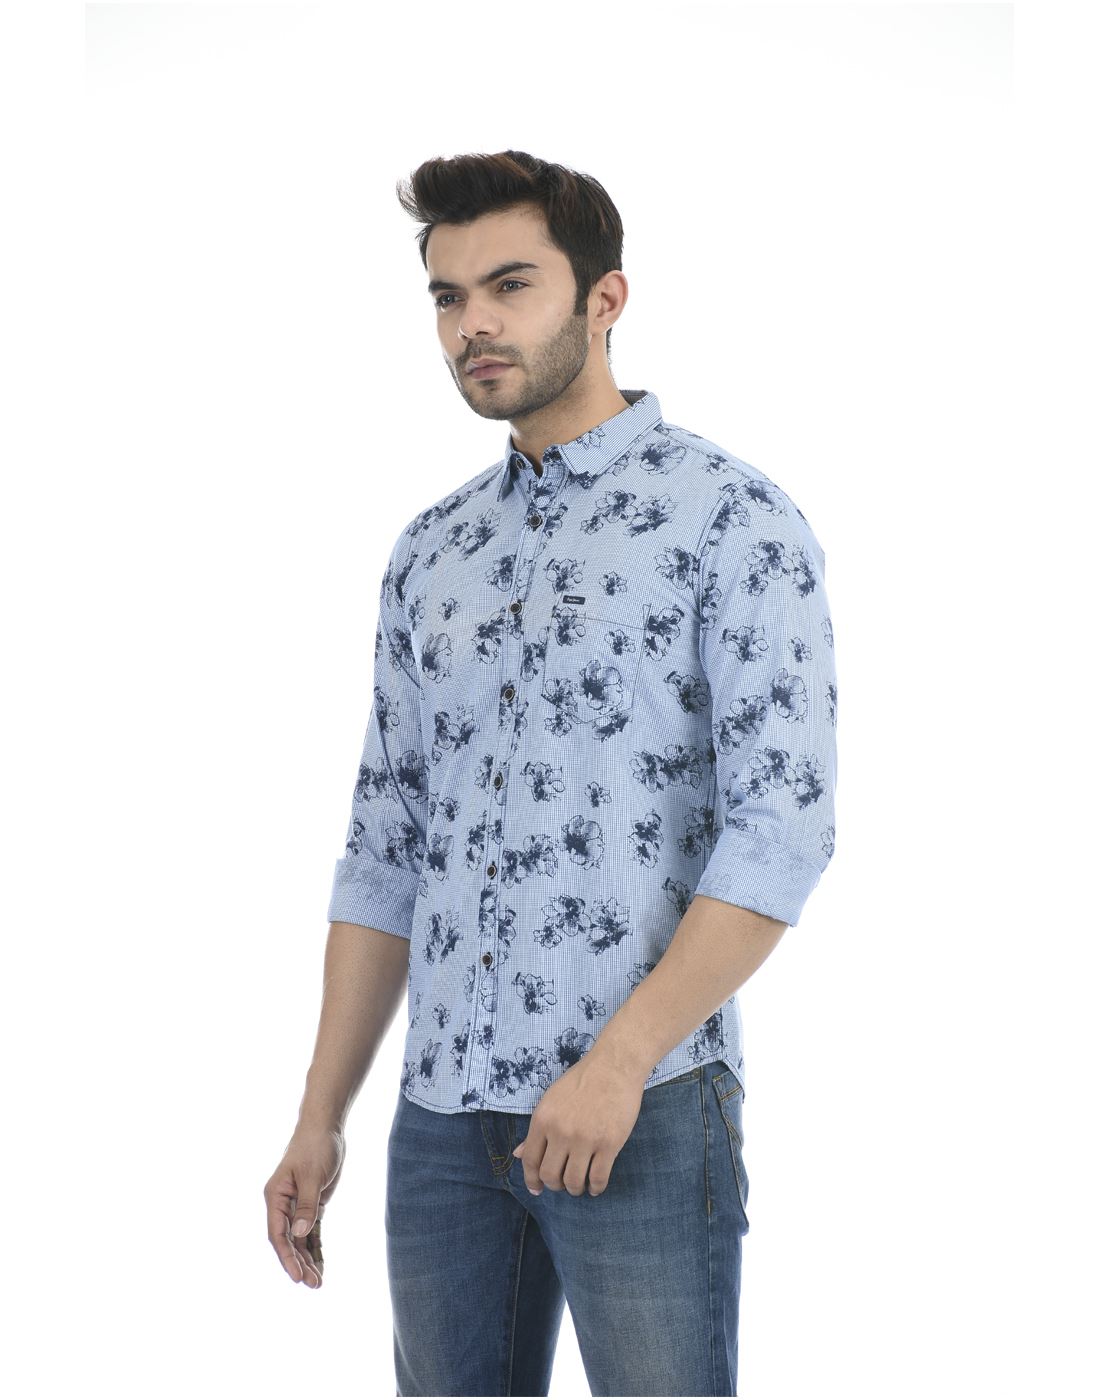 Wear Blue Print | Shirt 152330 Floral | Blue Pepe Jeans Casual Men